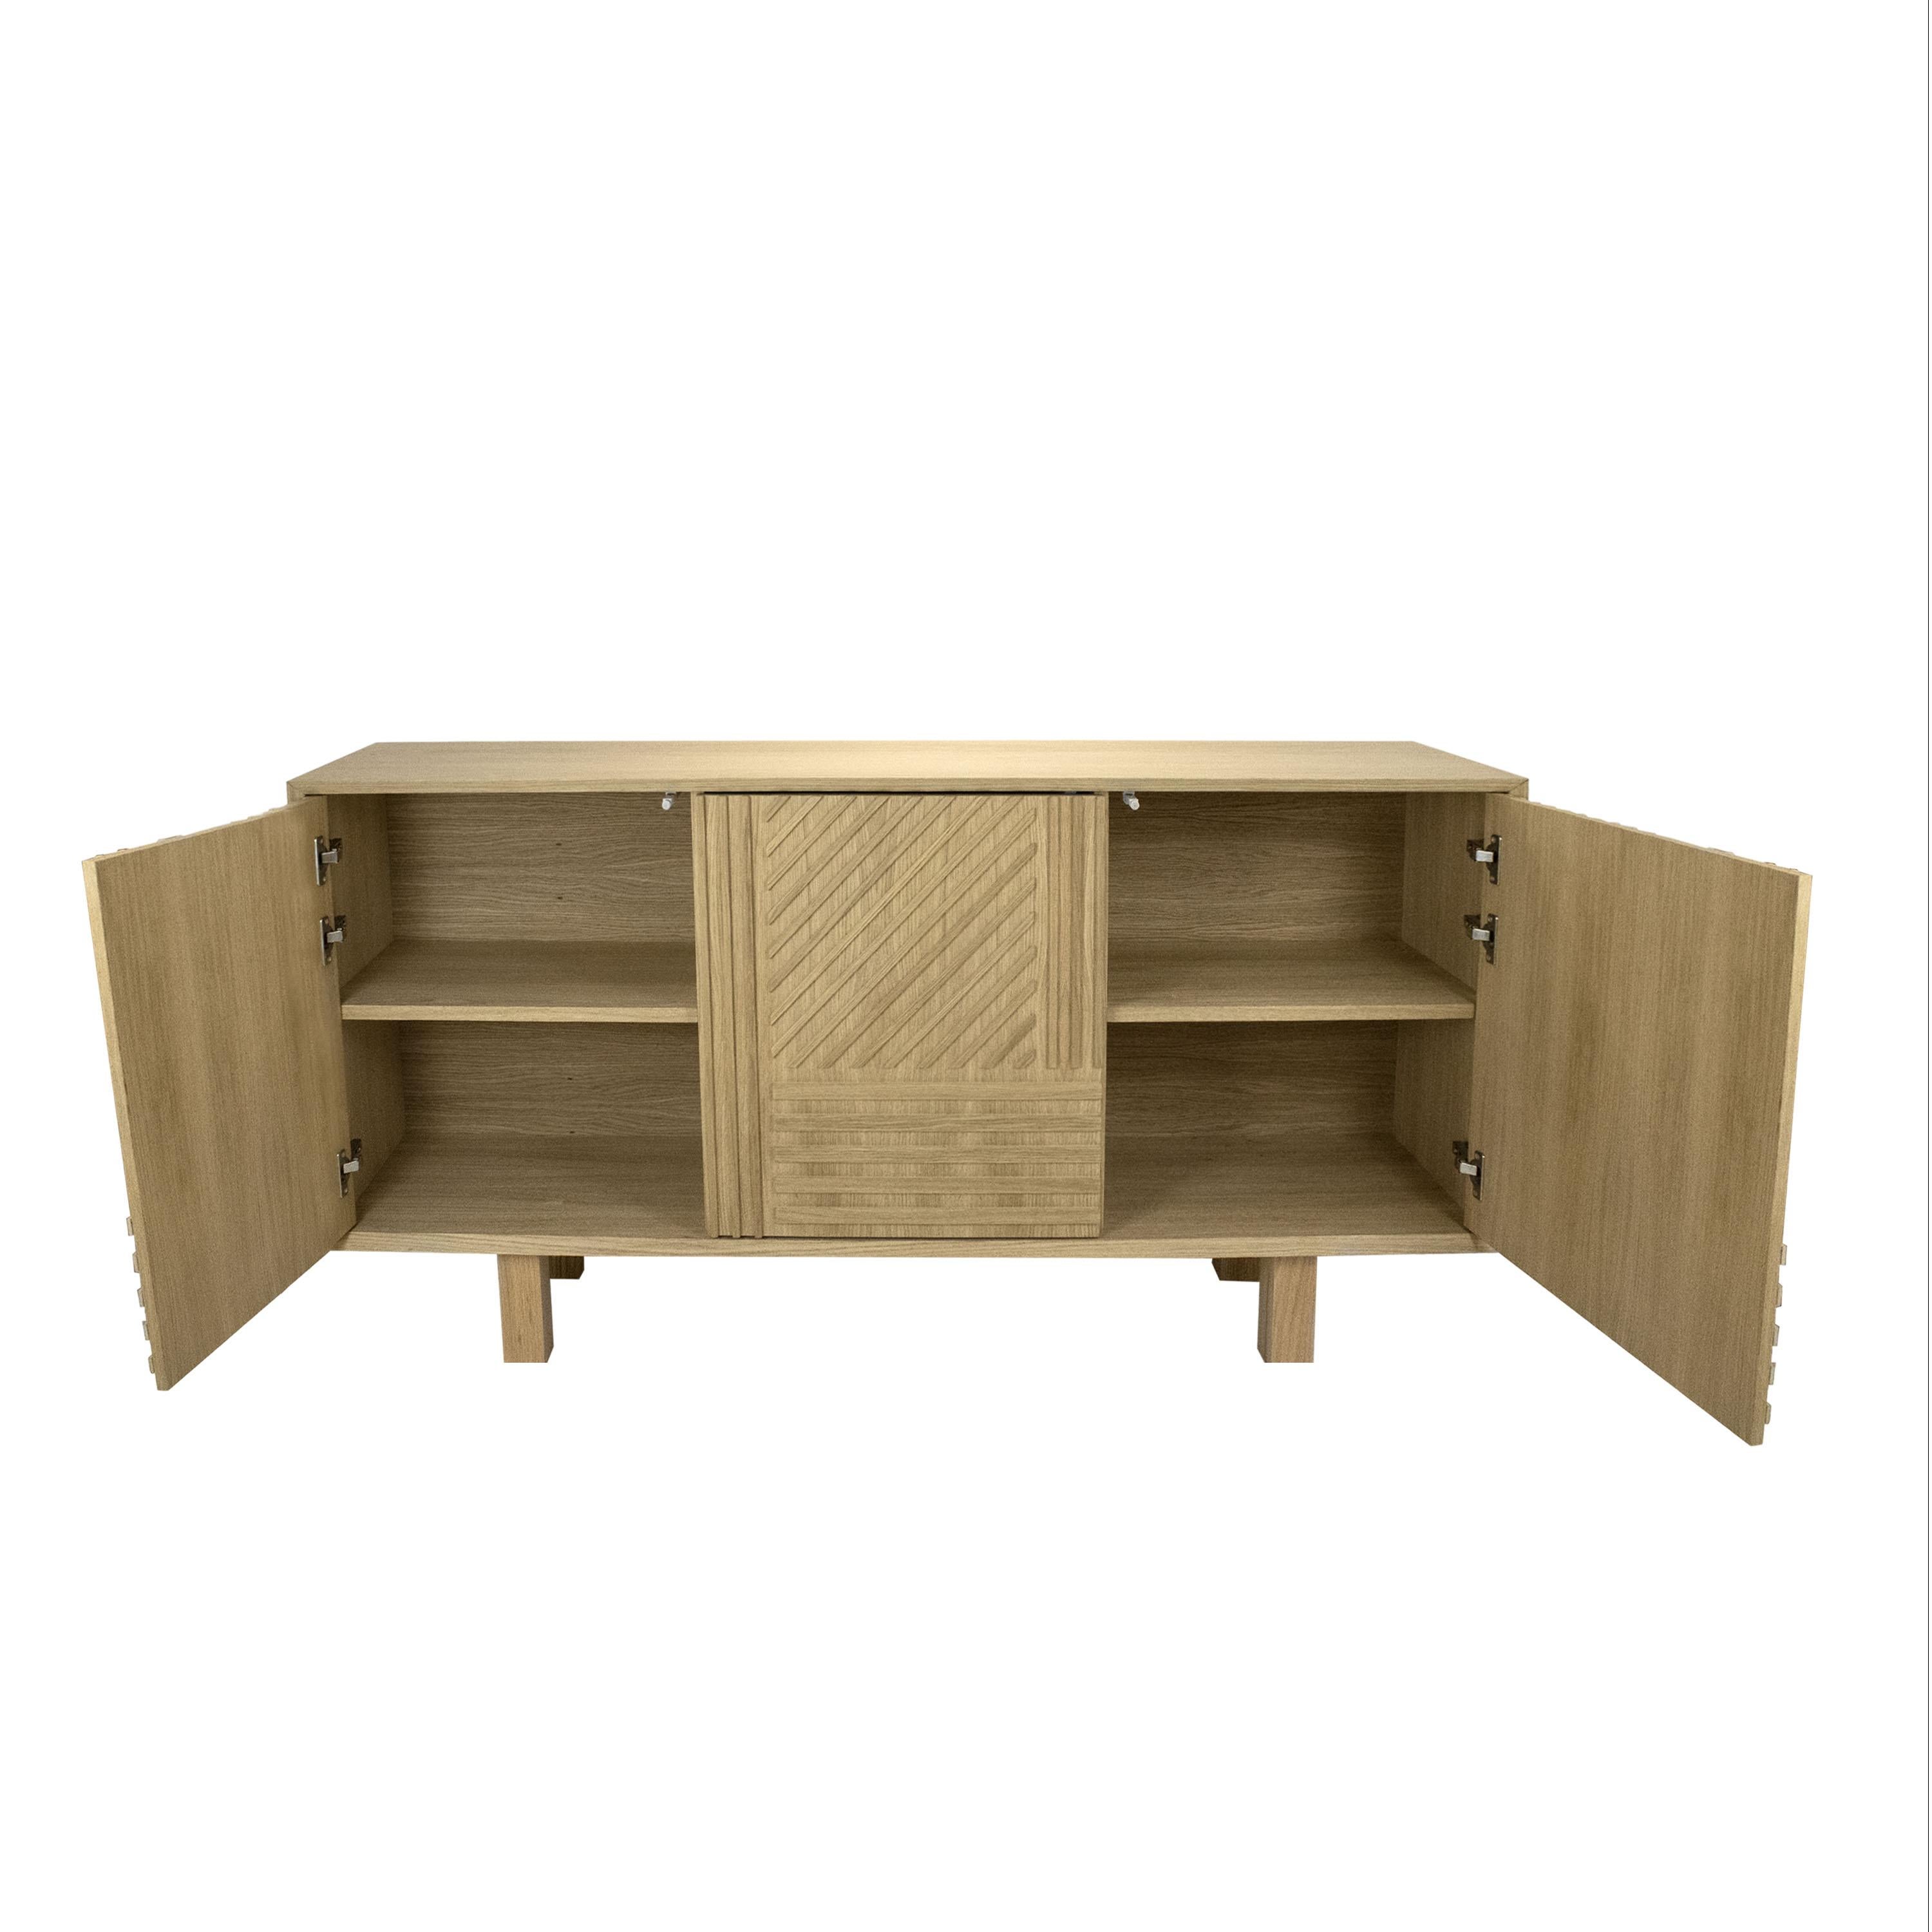 Spanish Solid Oak Three Doors Sideboard Desigend by IKB191 Studio, Spain, 2022 For Sale